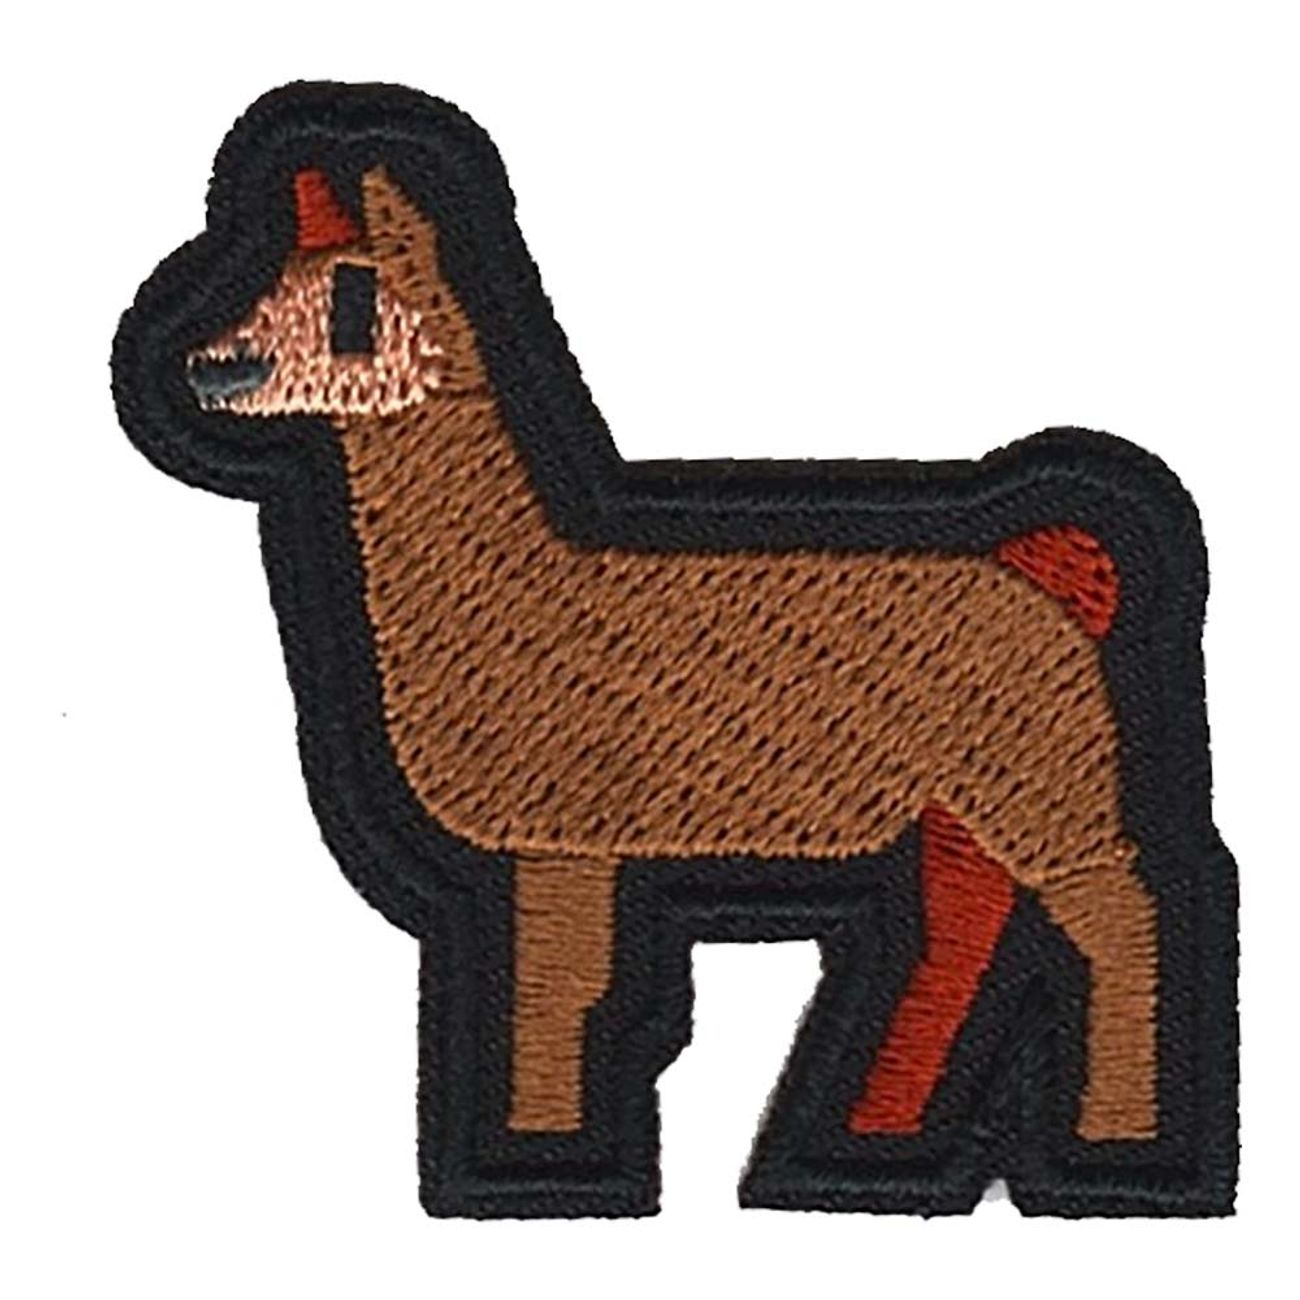 tygmarke-djur-lama-94127-2